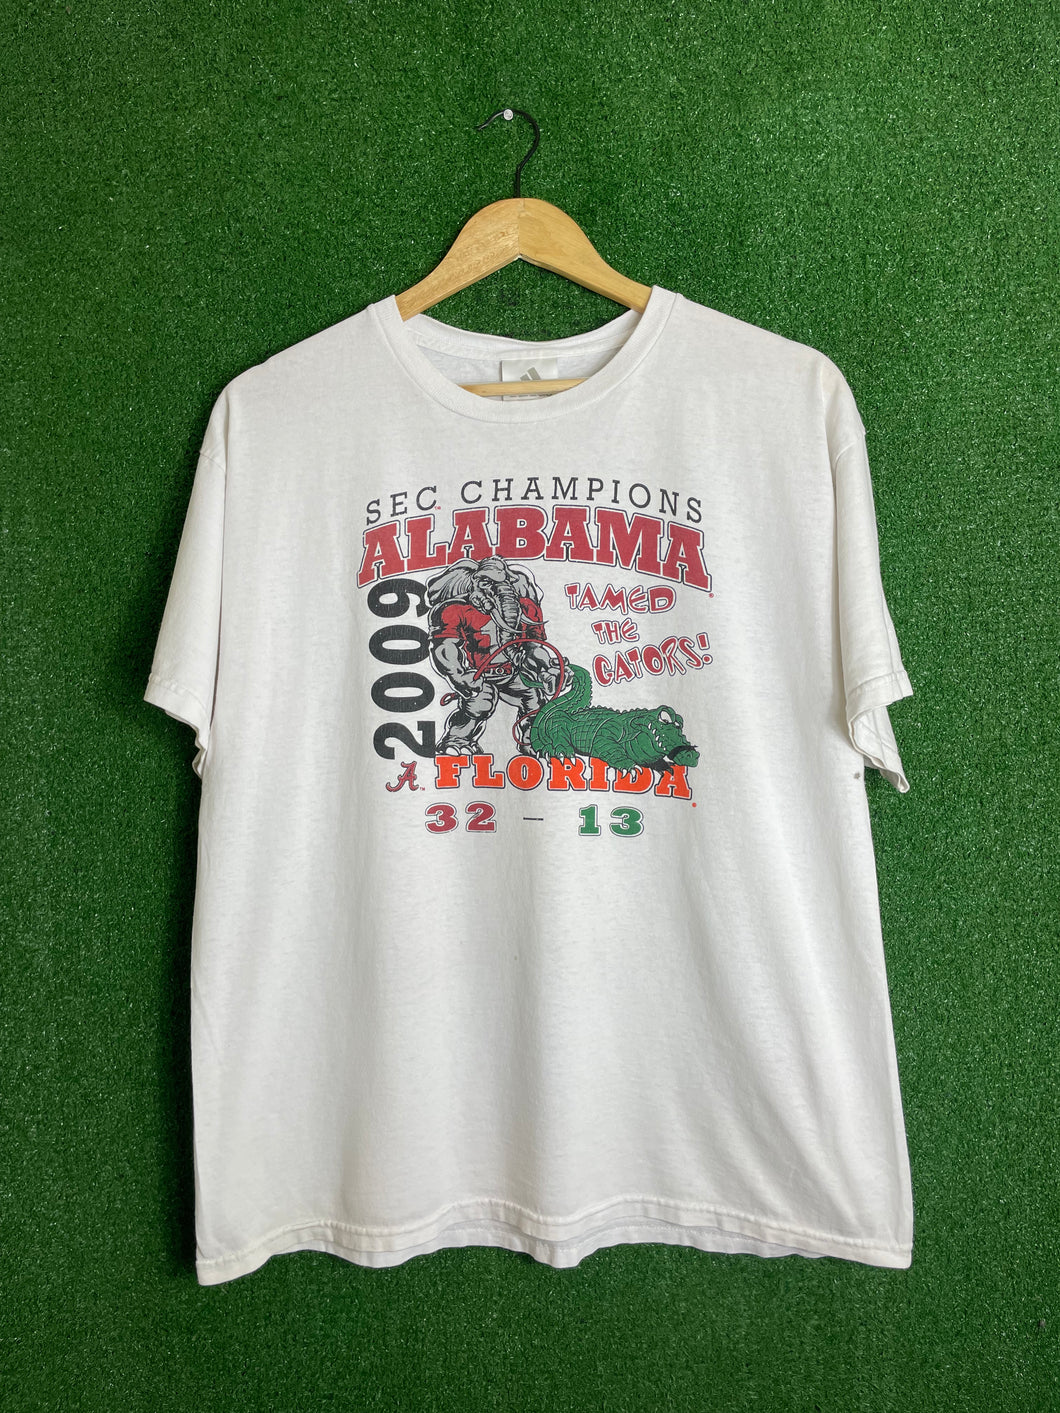 VTG 2009 University of Alabama vs Florida Shirt Size Large